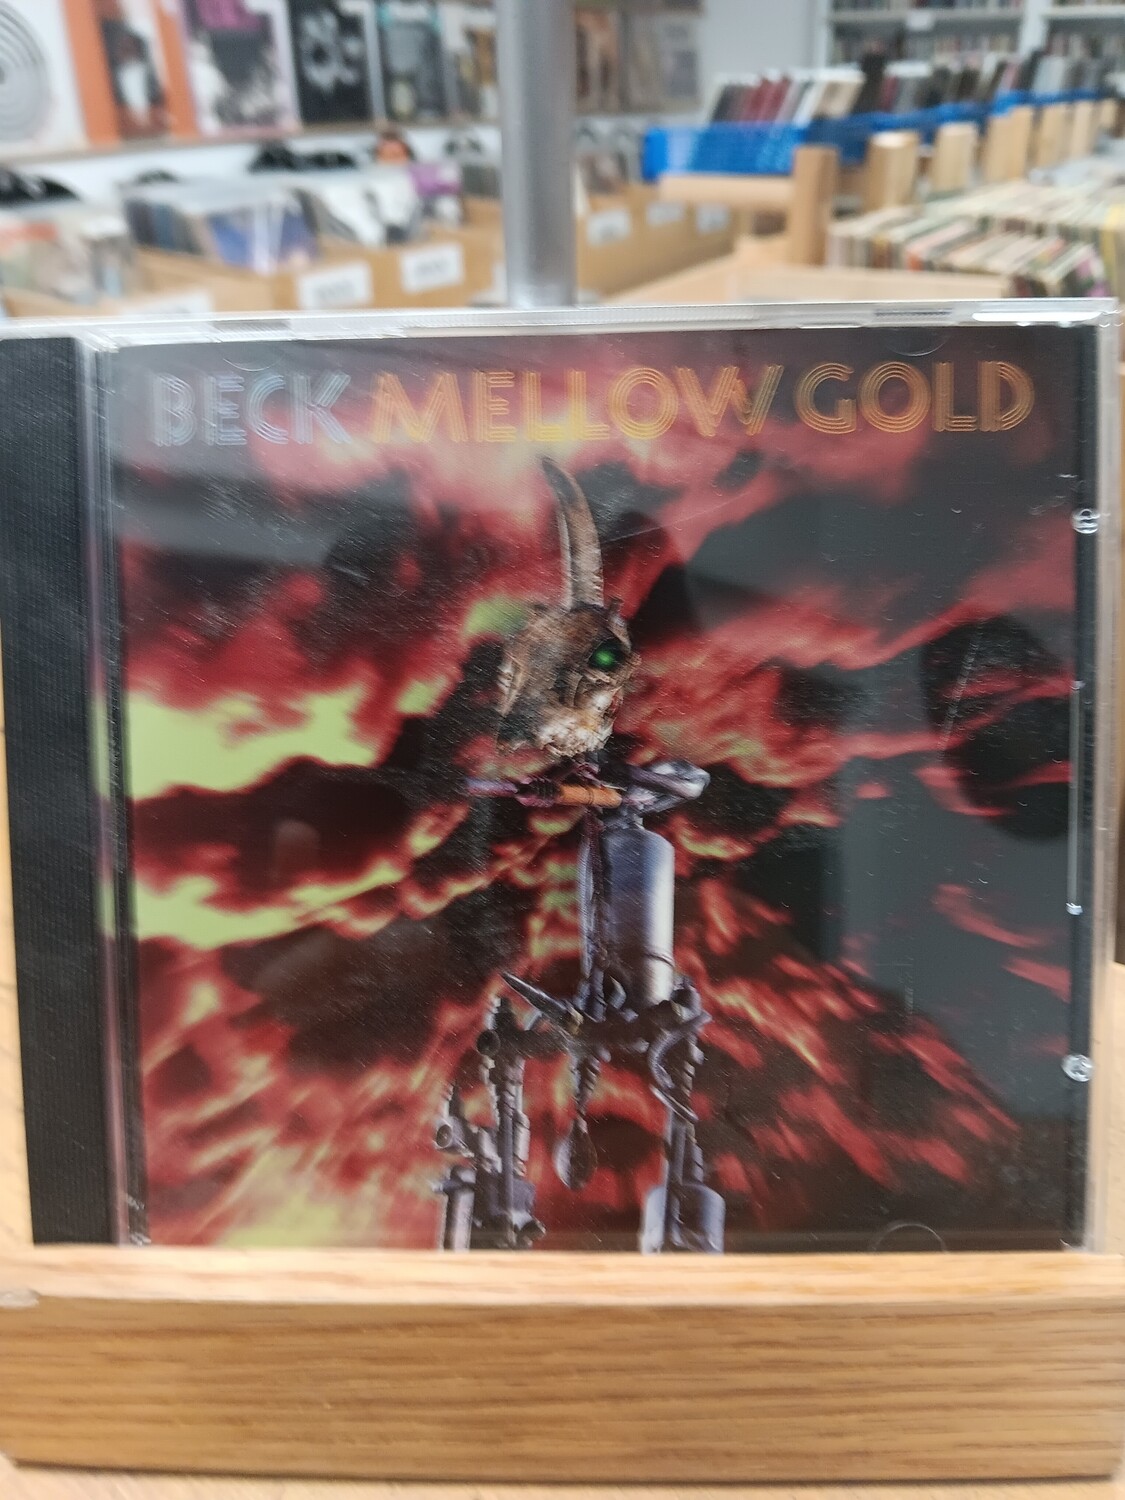 BECK - Mellowgold (CD)